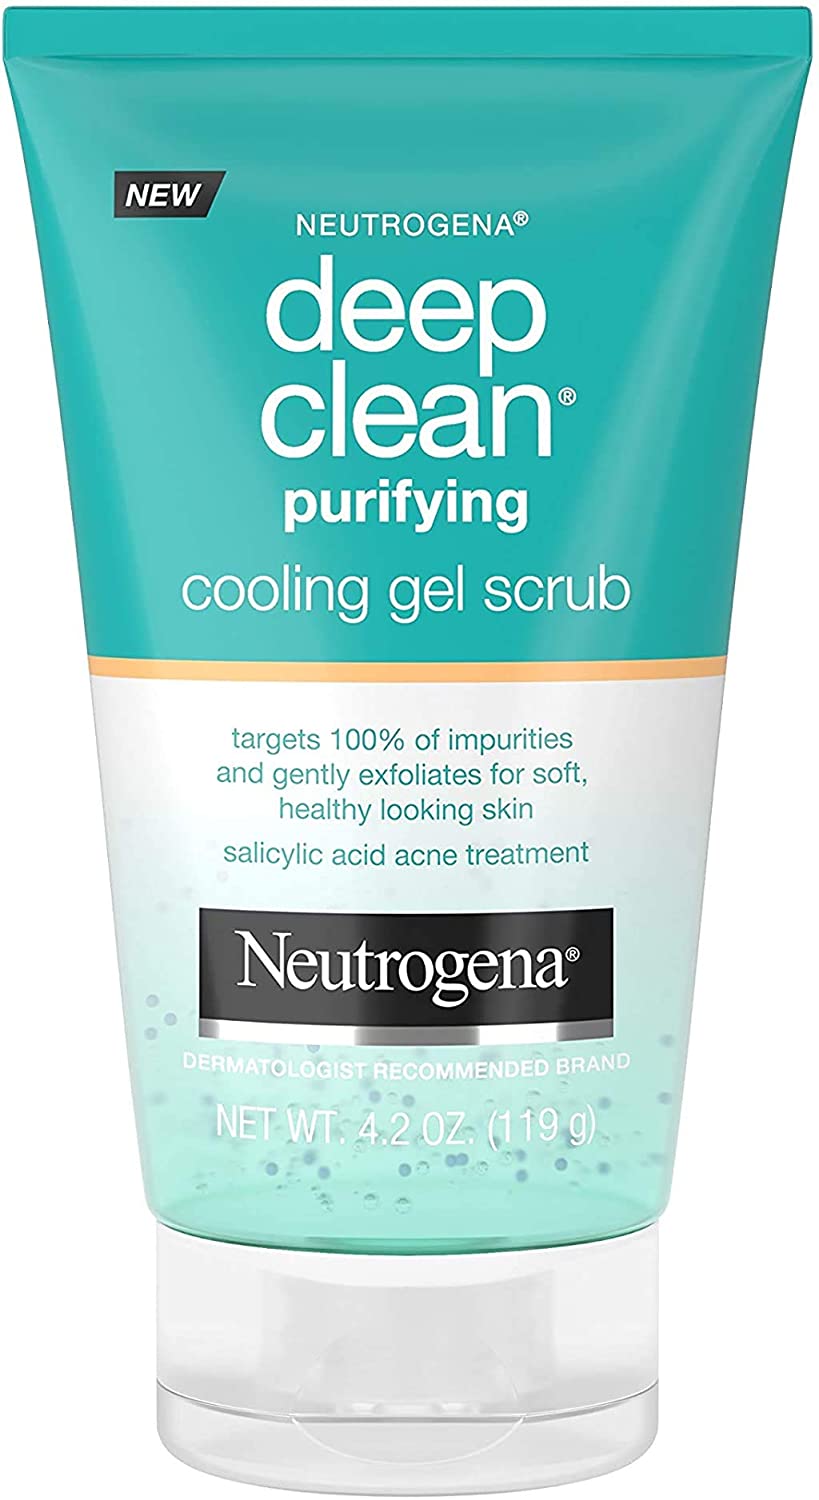 Neutrogena Deep Clean Purifying Cooling Gel Scrub, Salicylic Acid Acne Treatment, 4.2 oz. / 119g